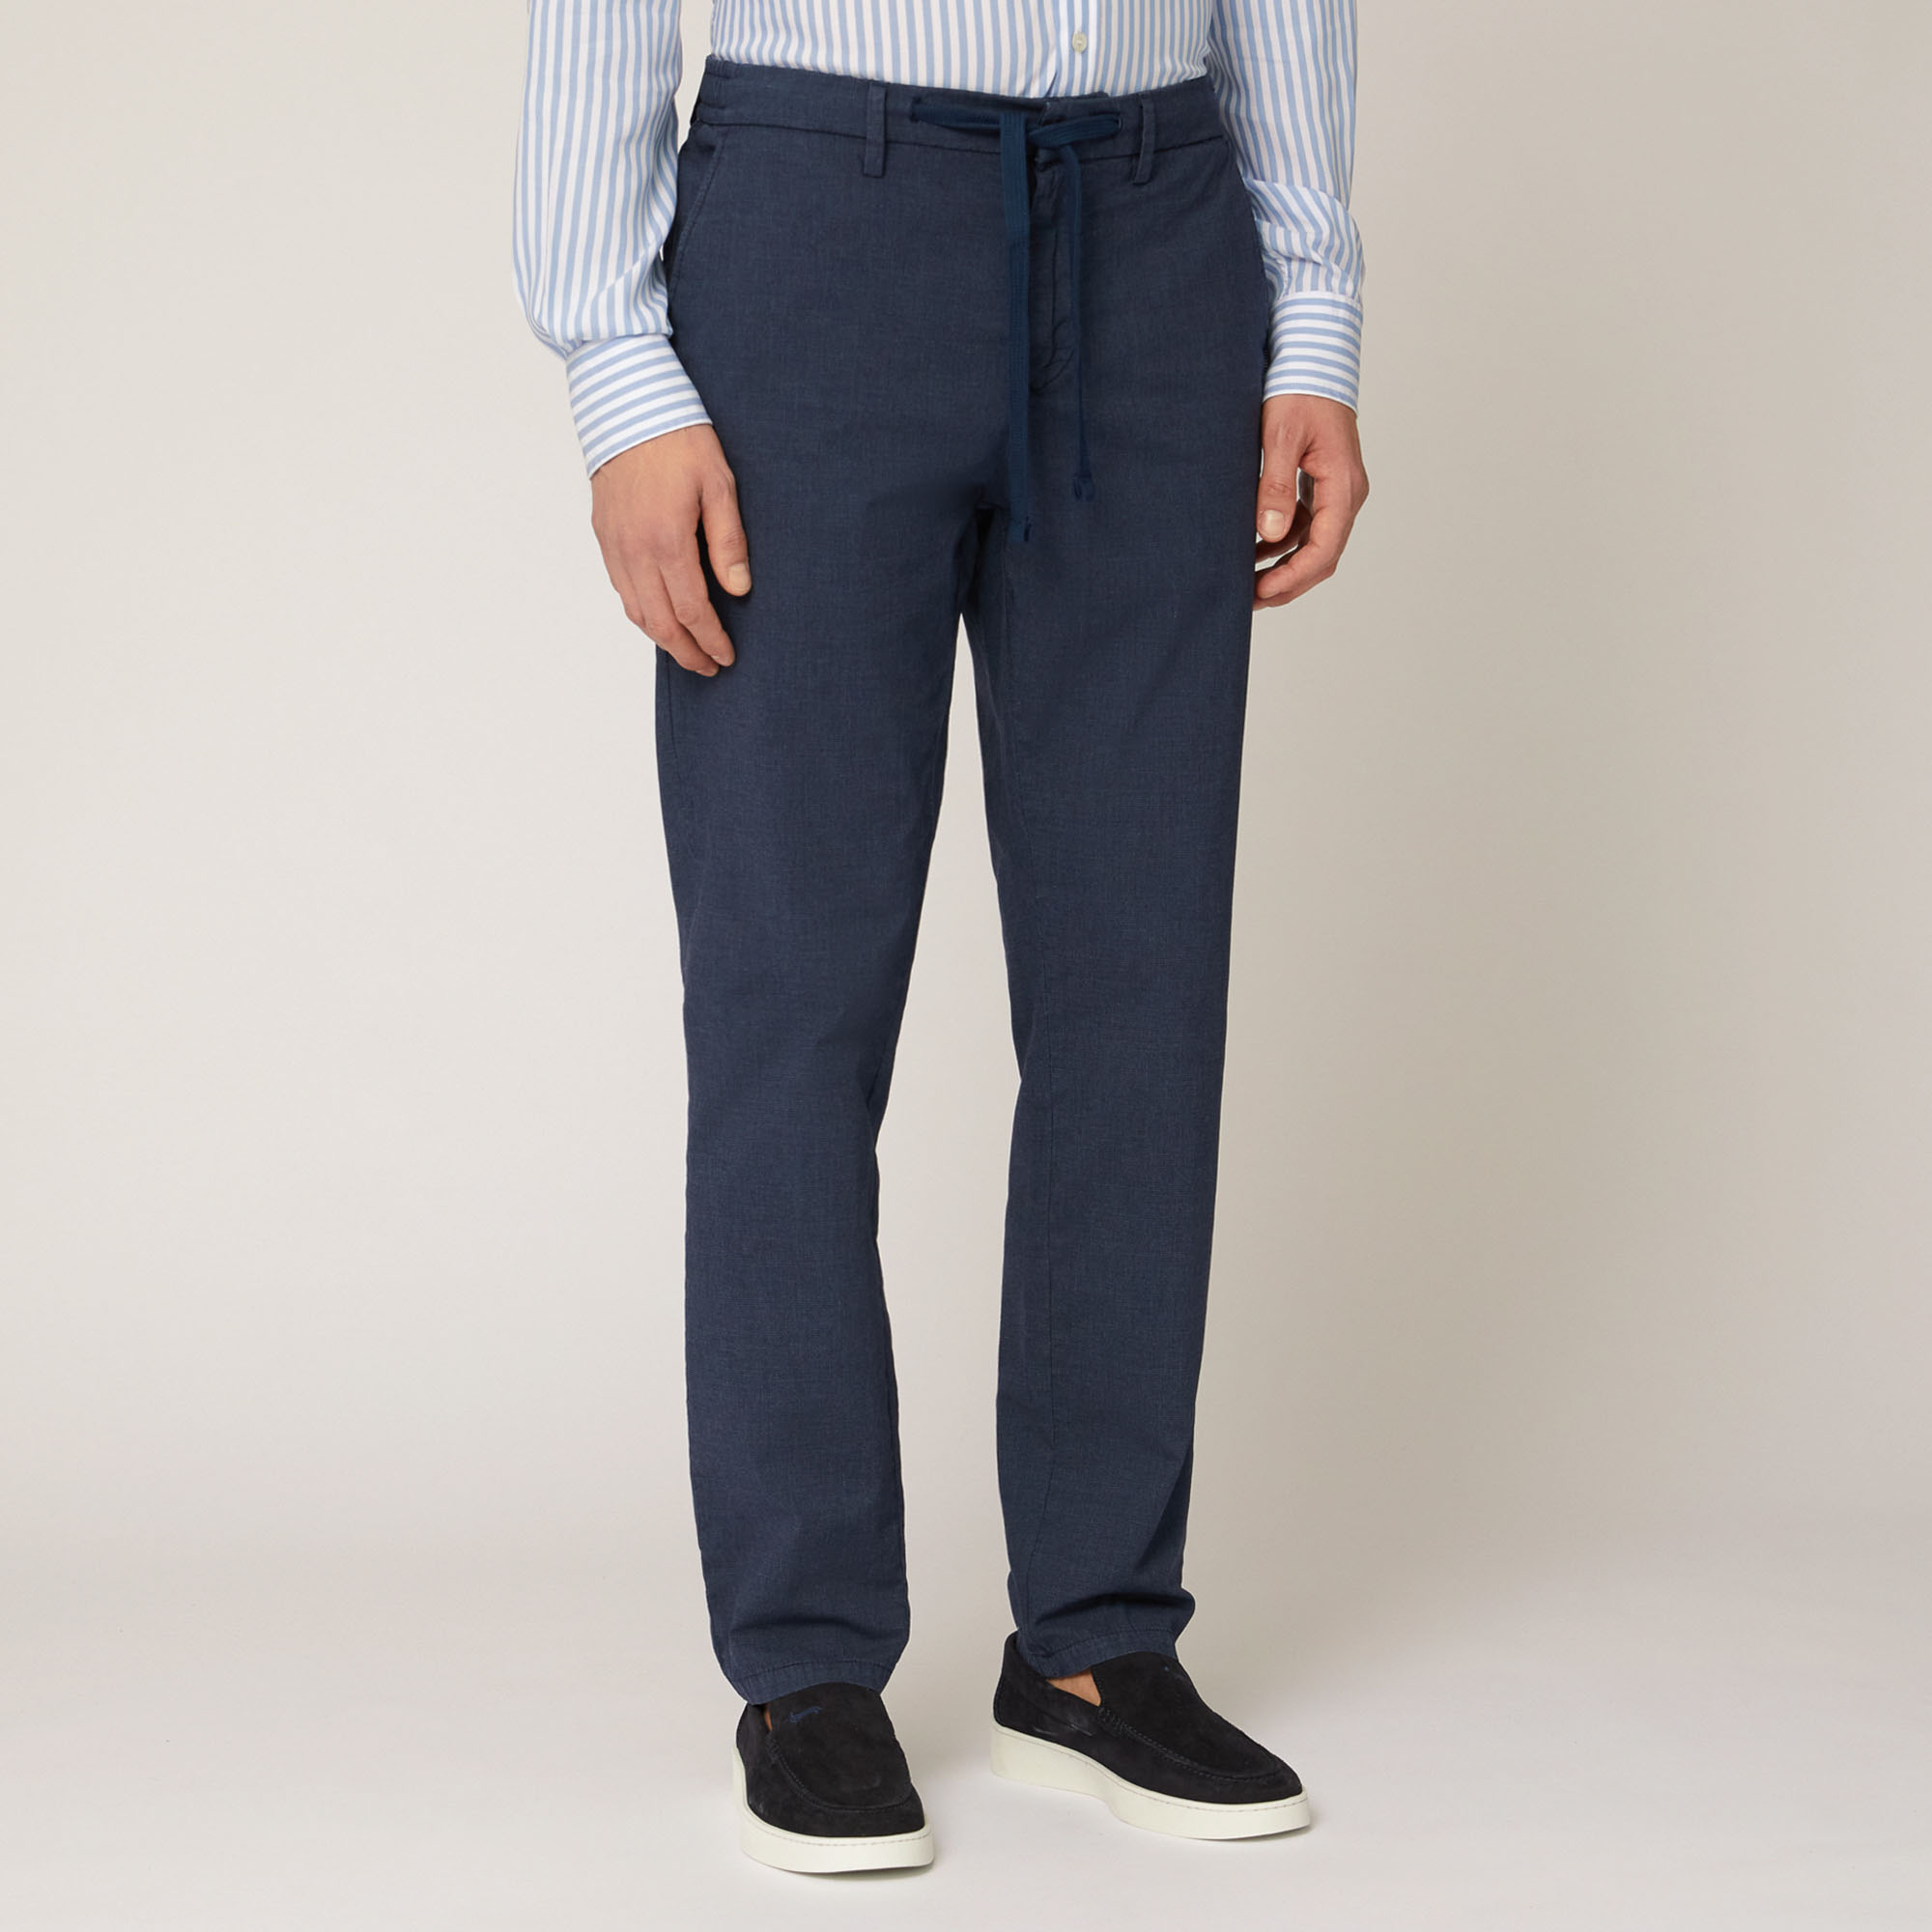 Cotton-Blend Jogging Pants, Blue, large image number 0